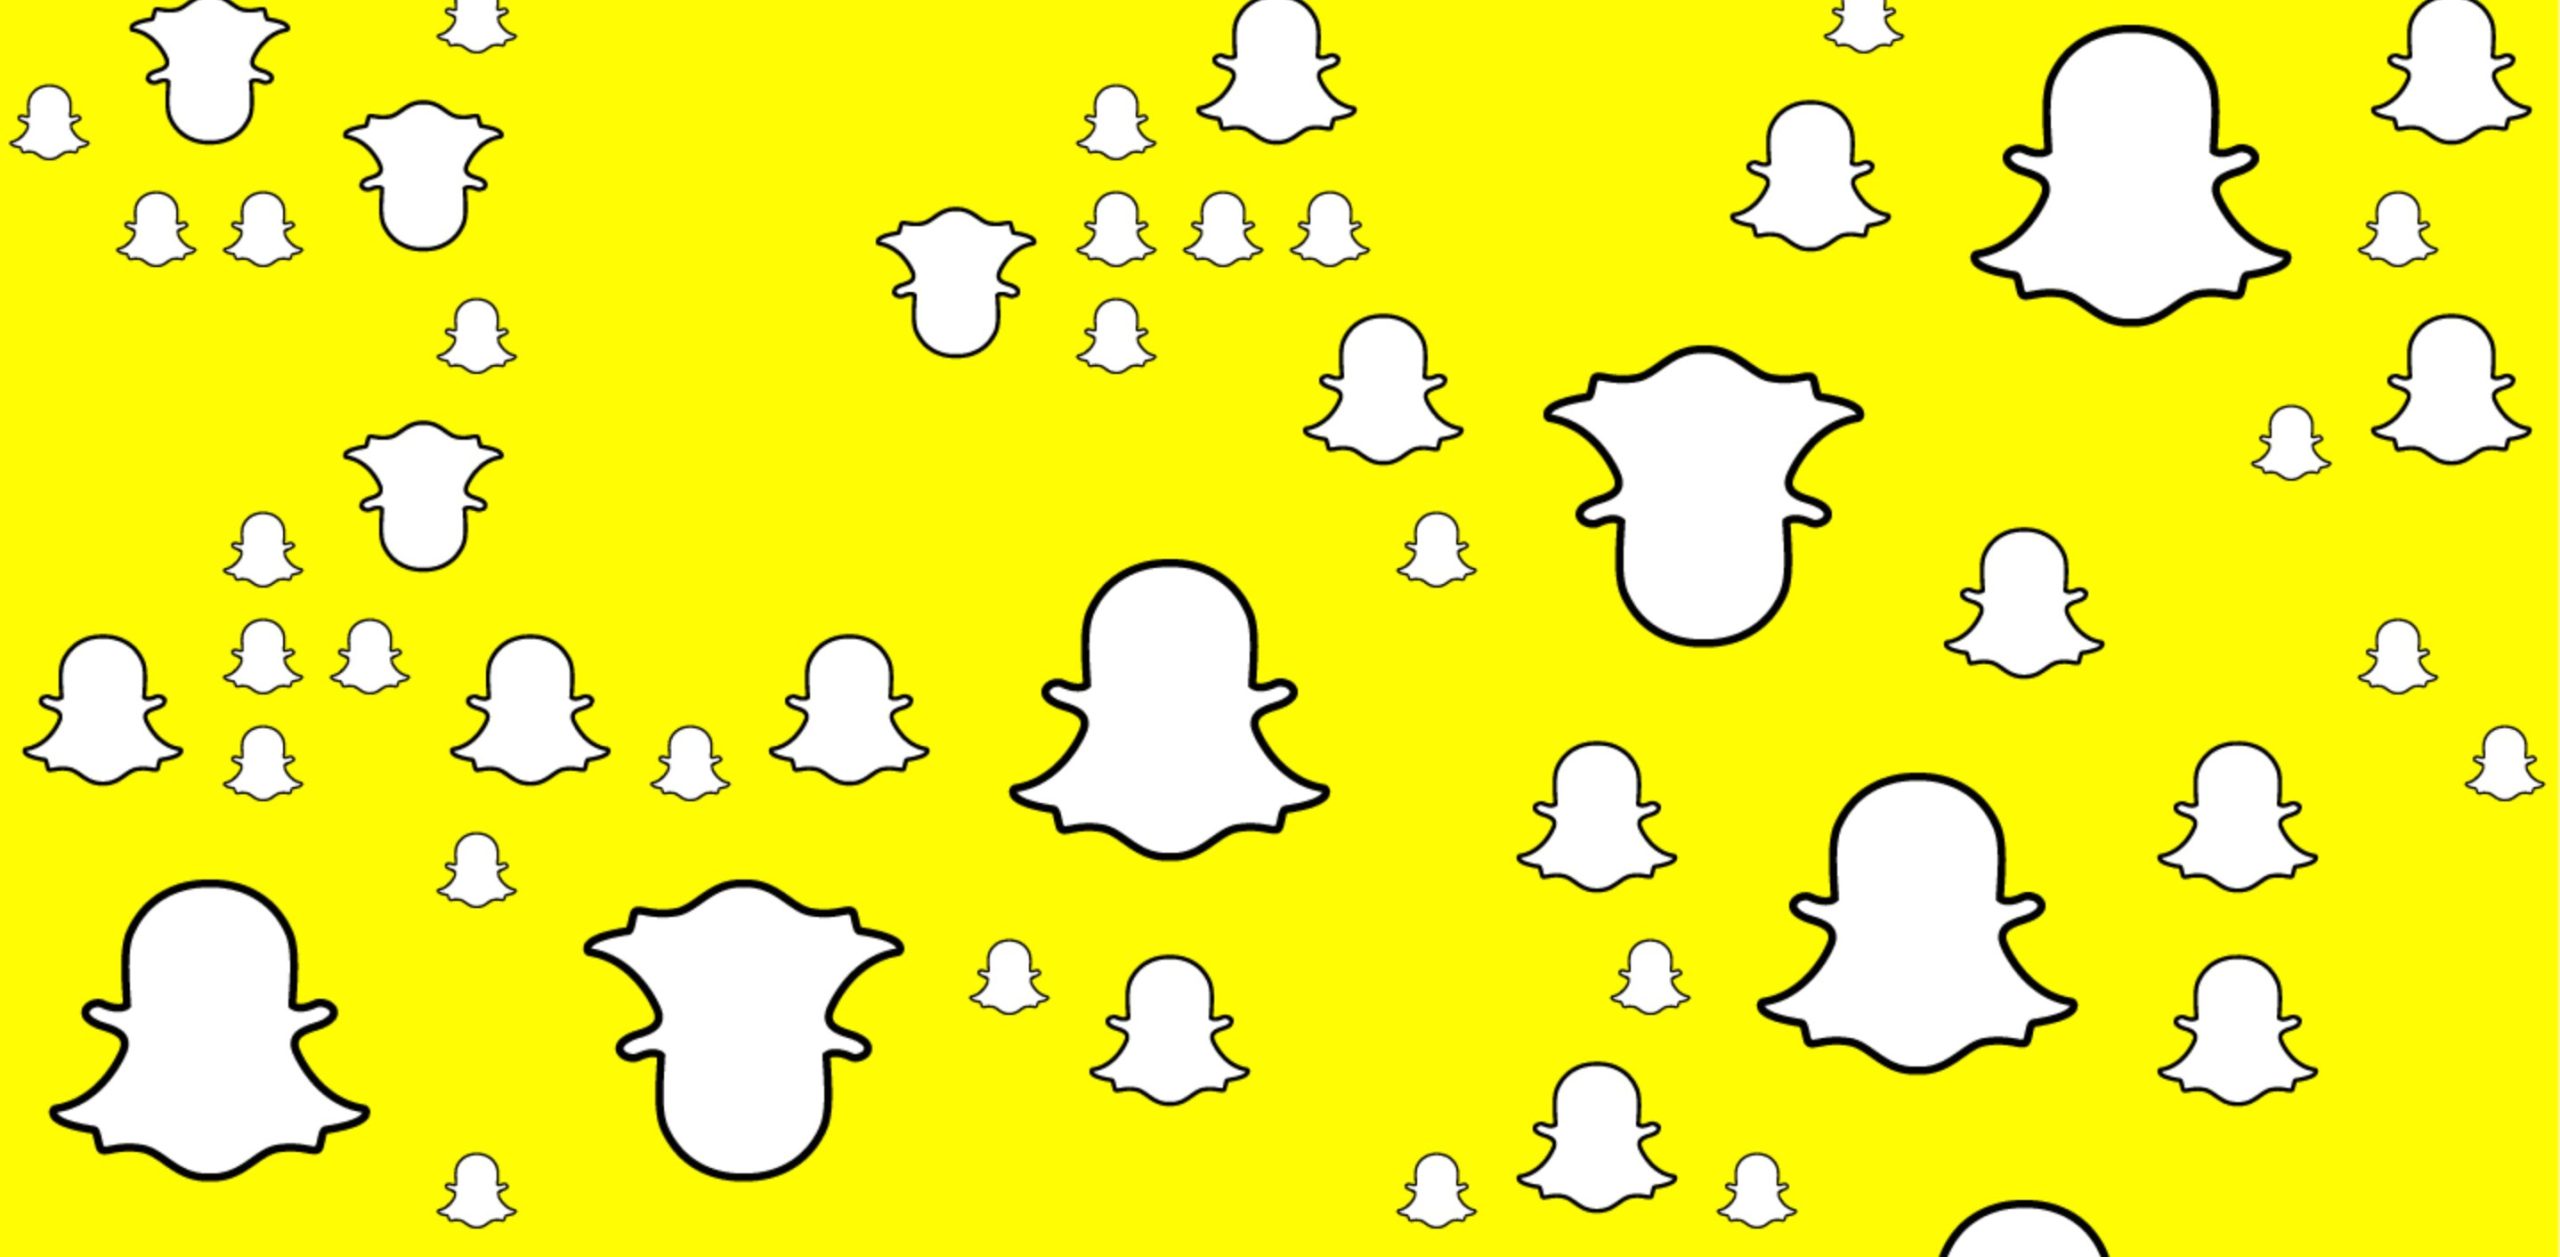 Des logos Snapchat, un acteur qui compte dans le référencement local